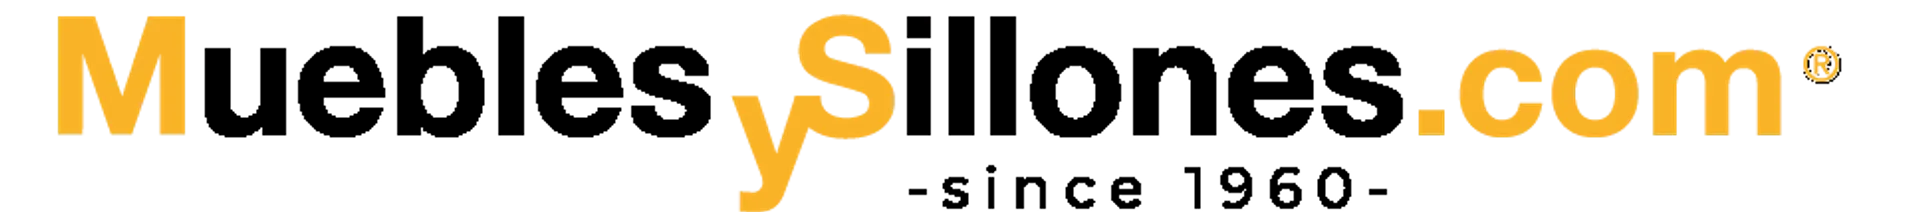 MUEBLES Y SILLONES logo